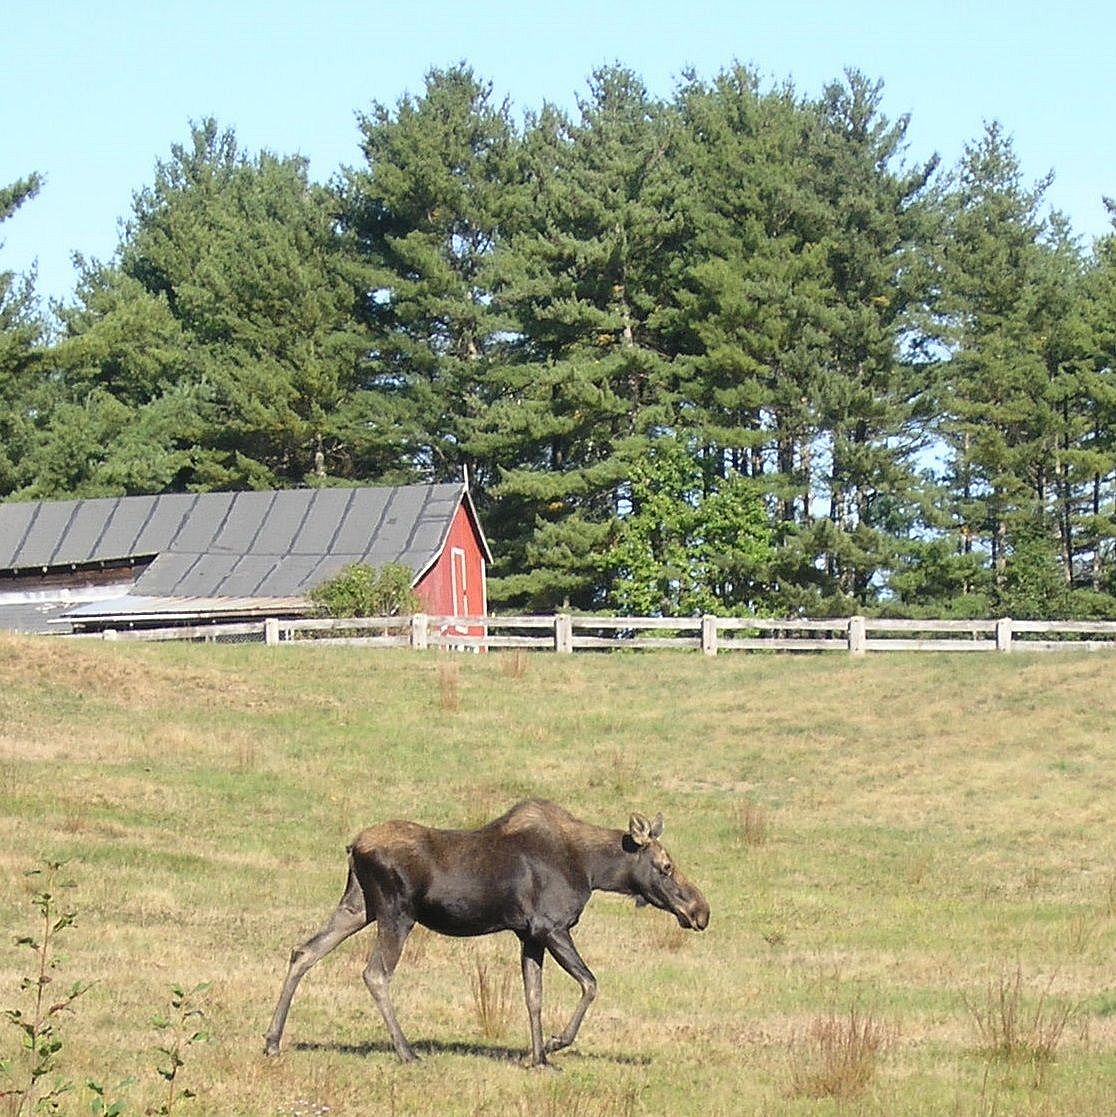 moose in field